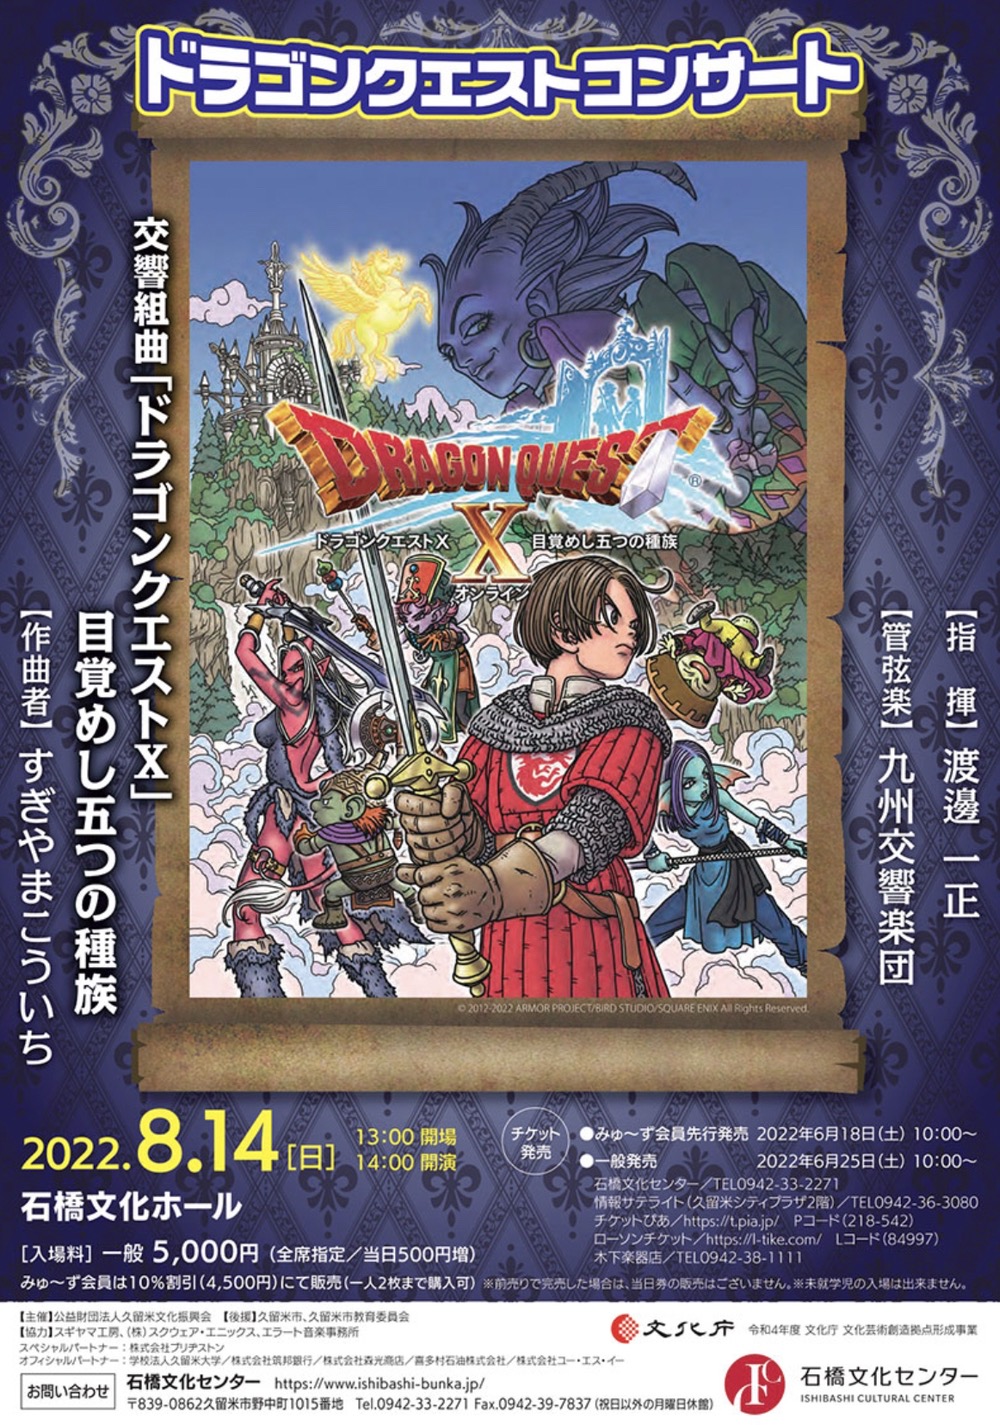 「ドラゴンクエストコンサート」久留米市石橋文化ホールで開催 九州交響楽団